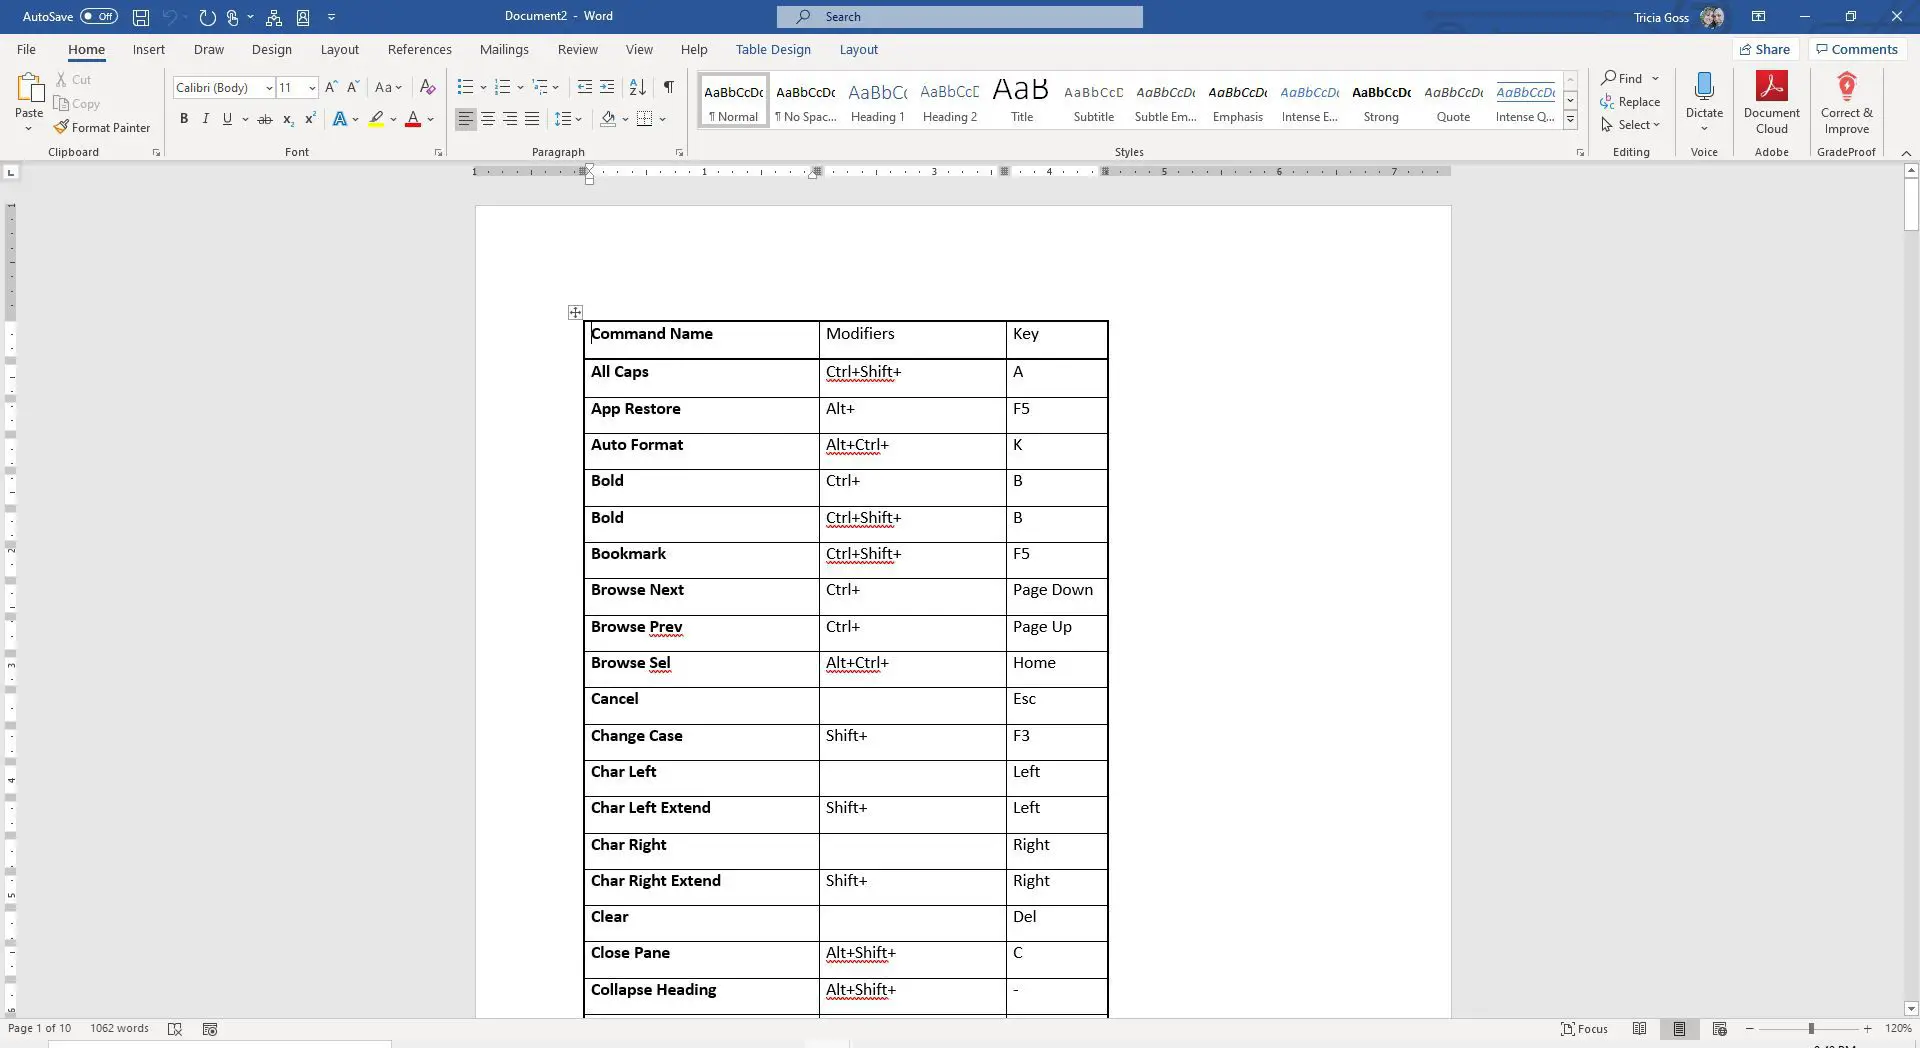 Captura de tela da lista de comandos no Word